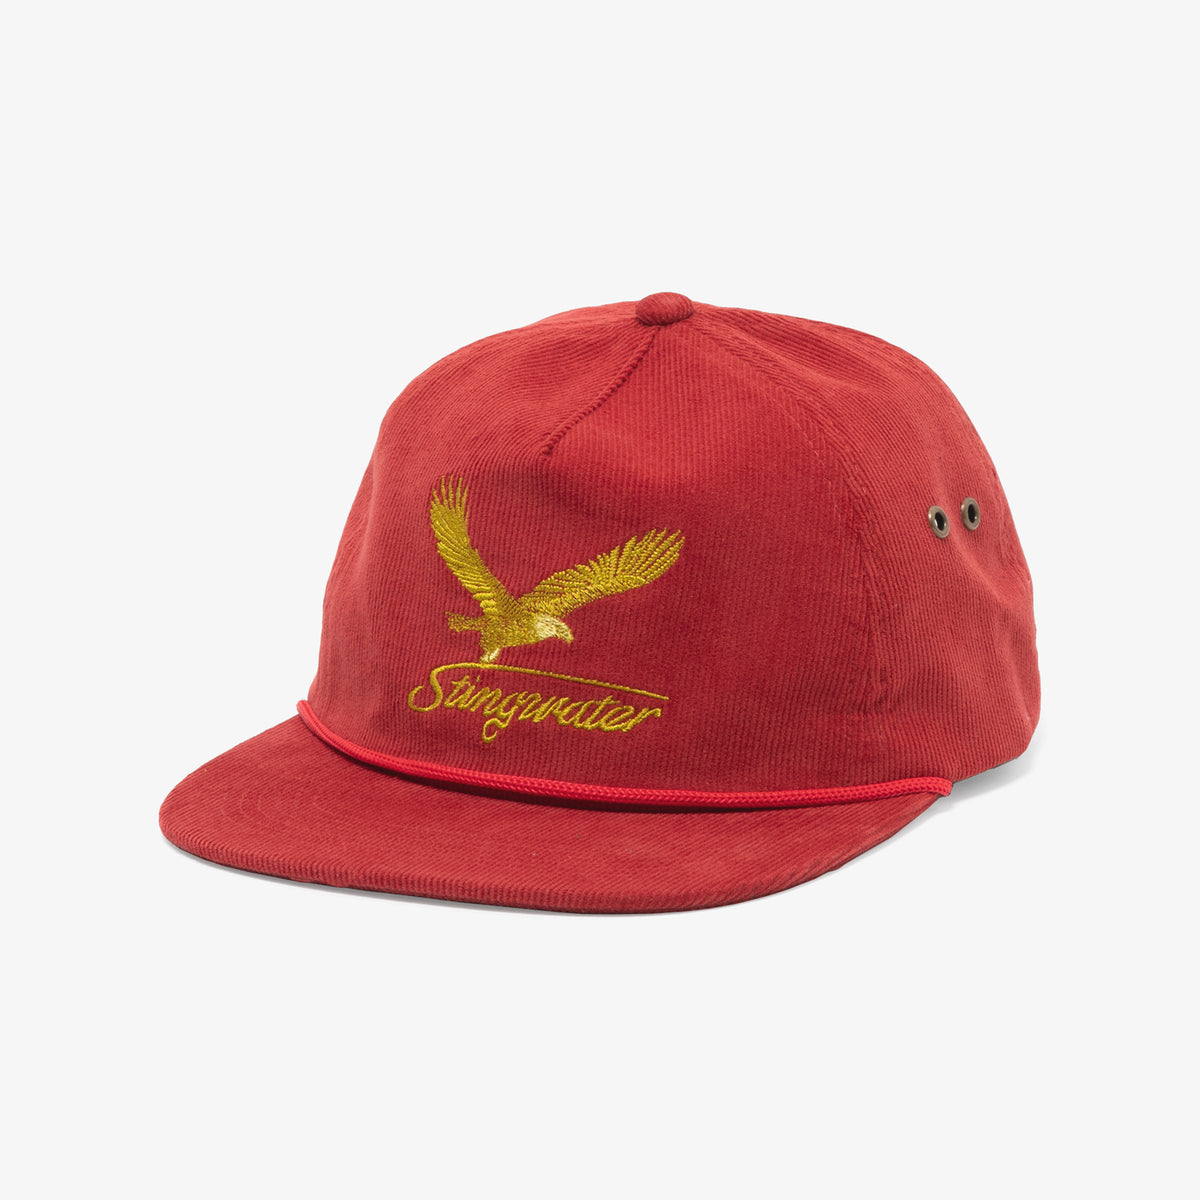 Hawkstar Hat (Red)